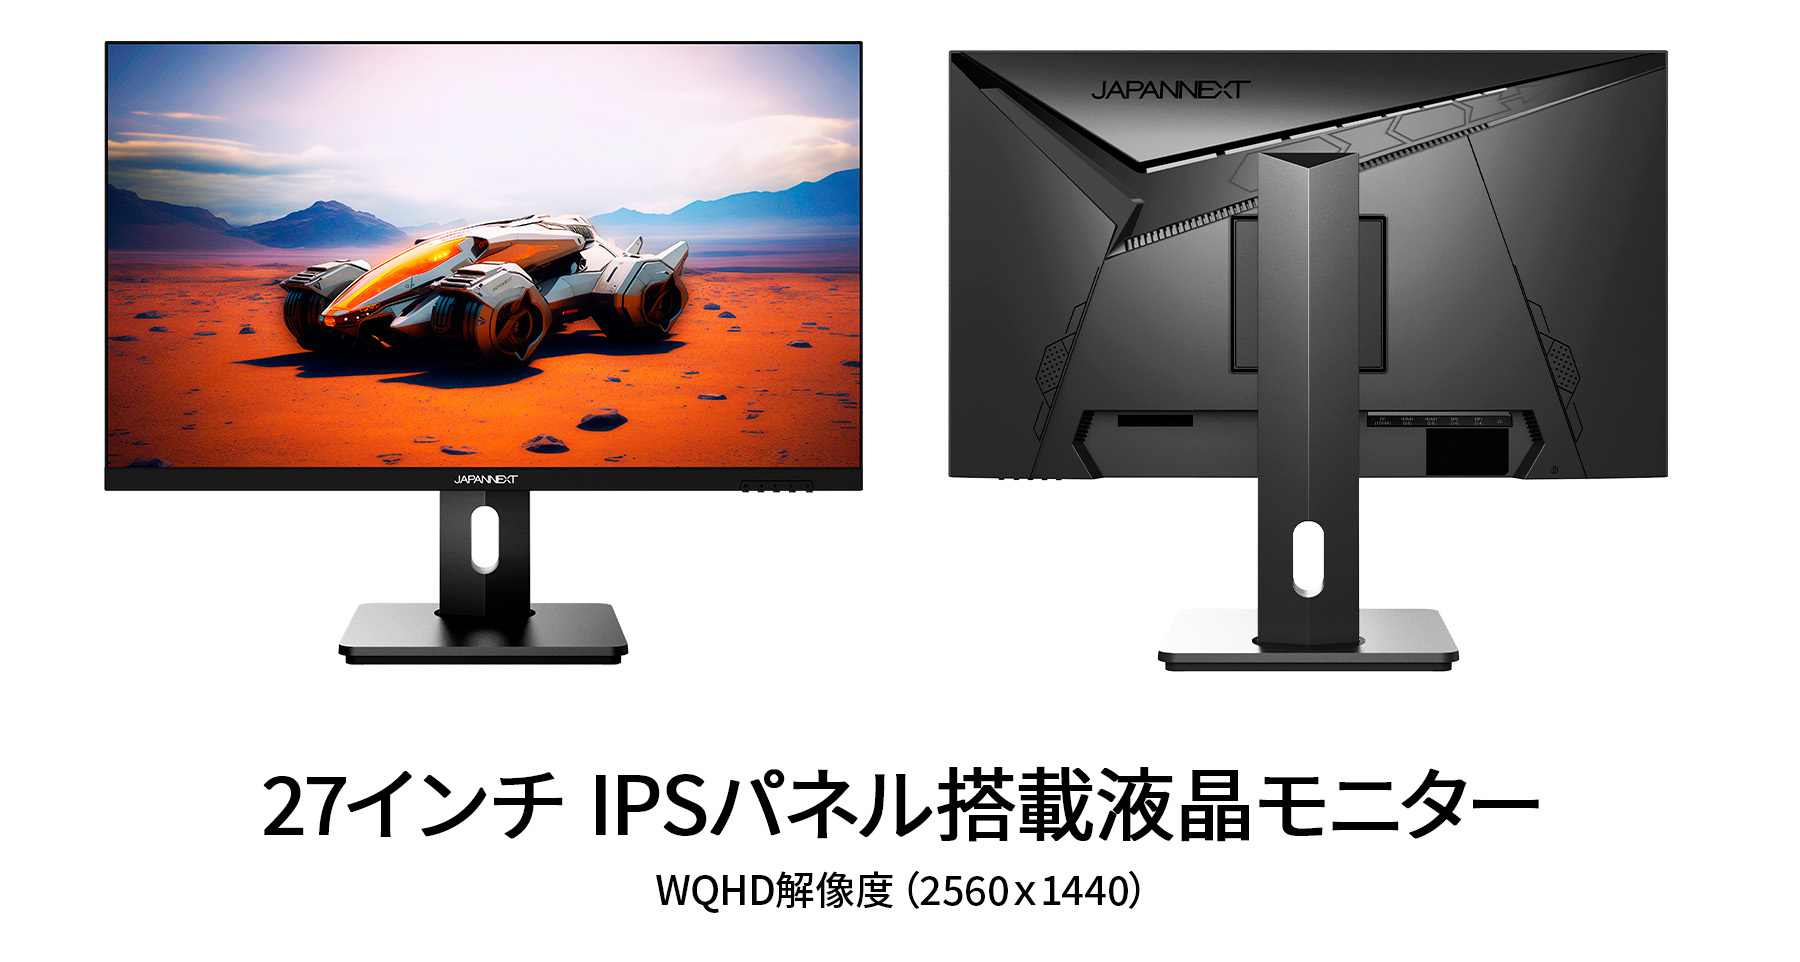 JAPANNEXT 27インチ IPSパネル搭載 WQHD(2560x1440)解像度 240Hz対応 ゲーミングモニター  JN-27IPS240WQHDR-HSP HDMI DP HDR PS5 高さ調整 ジャパンネクスト